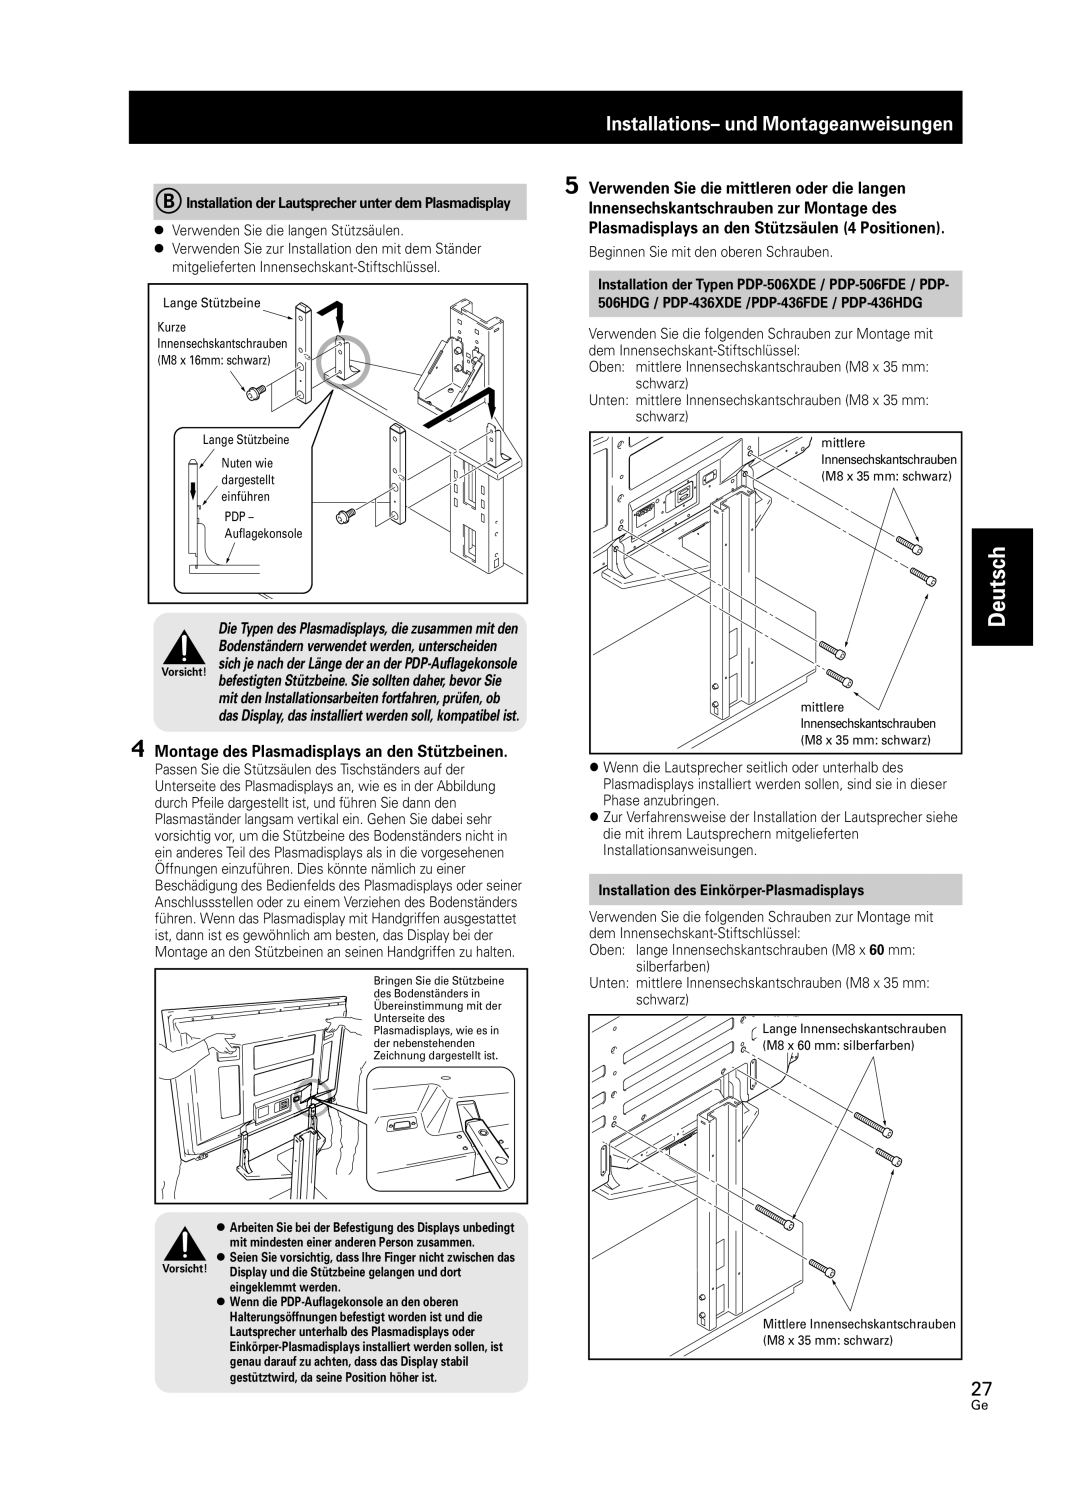 Pioneer PDK-FS05 manual Installations- und Montageanweisungen, Deutsch, 4Montage des Plasmadisplays an den Stützbeinen 